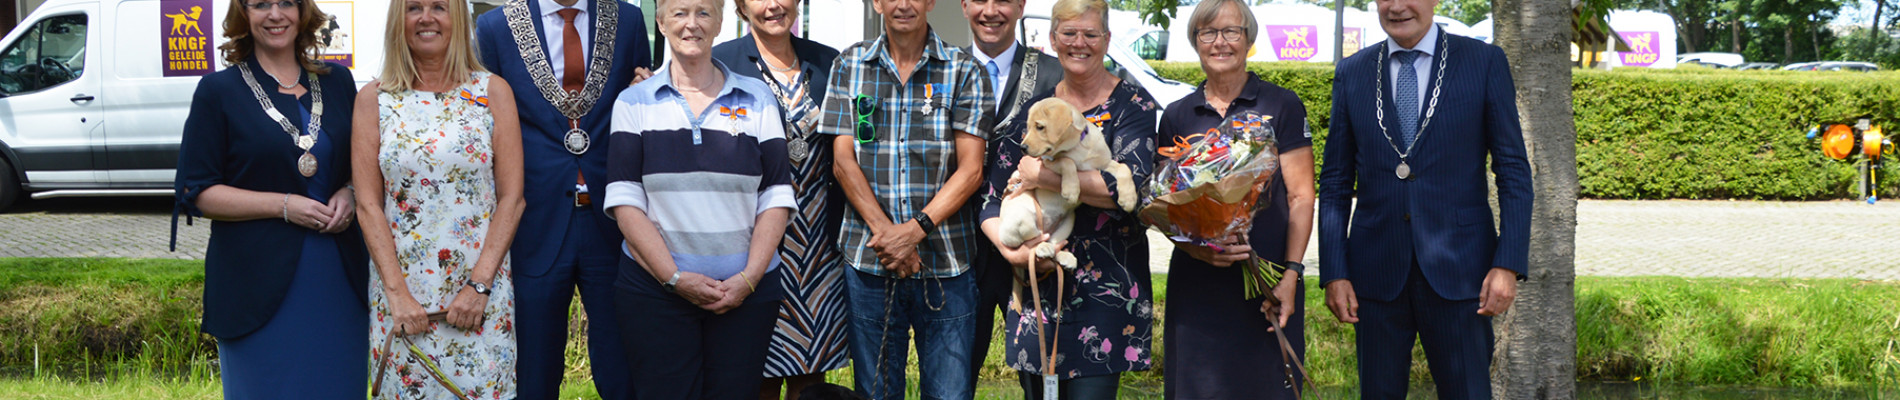 Vrijwilligers met burgemeesters in de tuin van KNGF geleidehonden met twee honden.